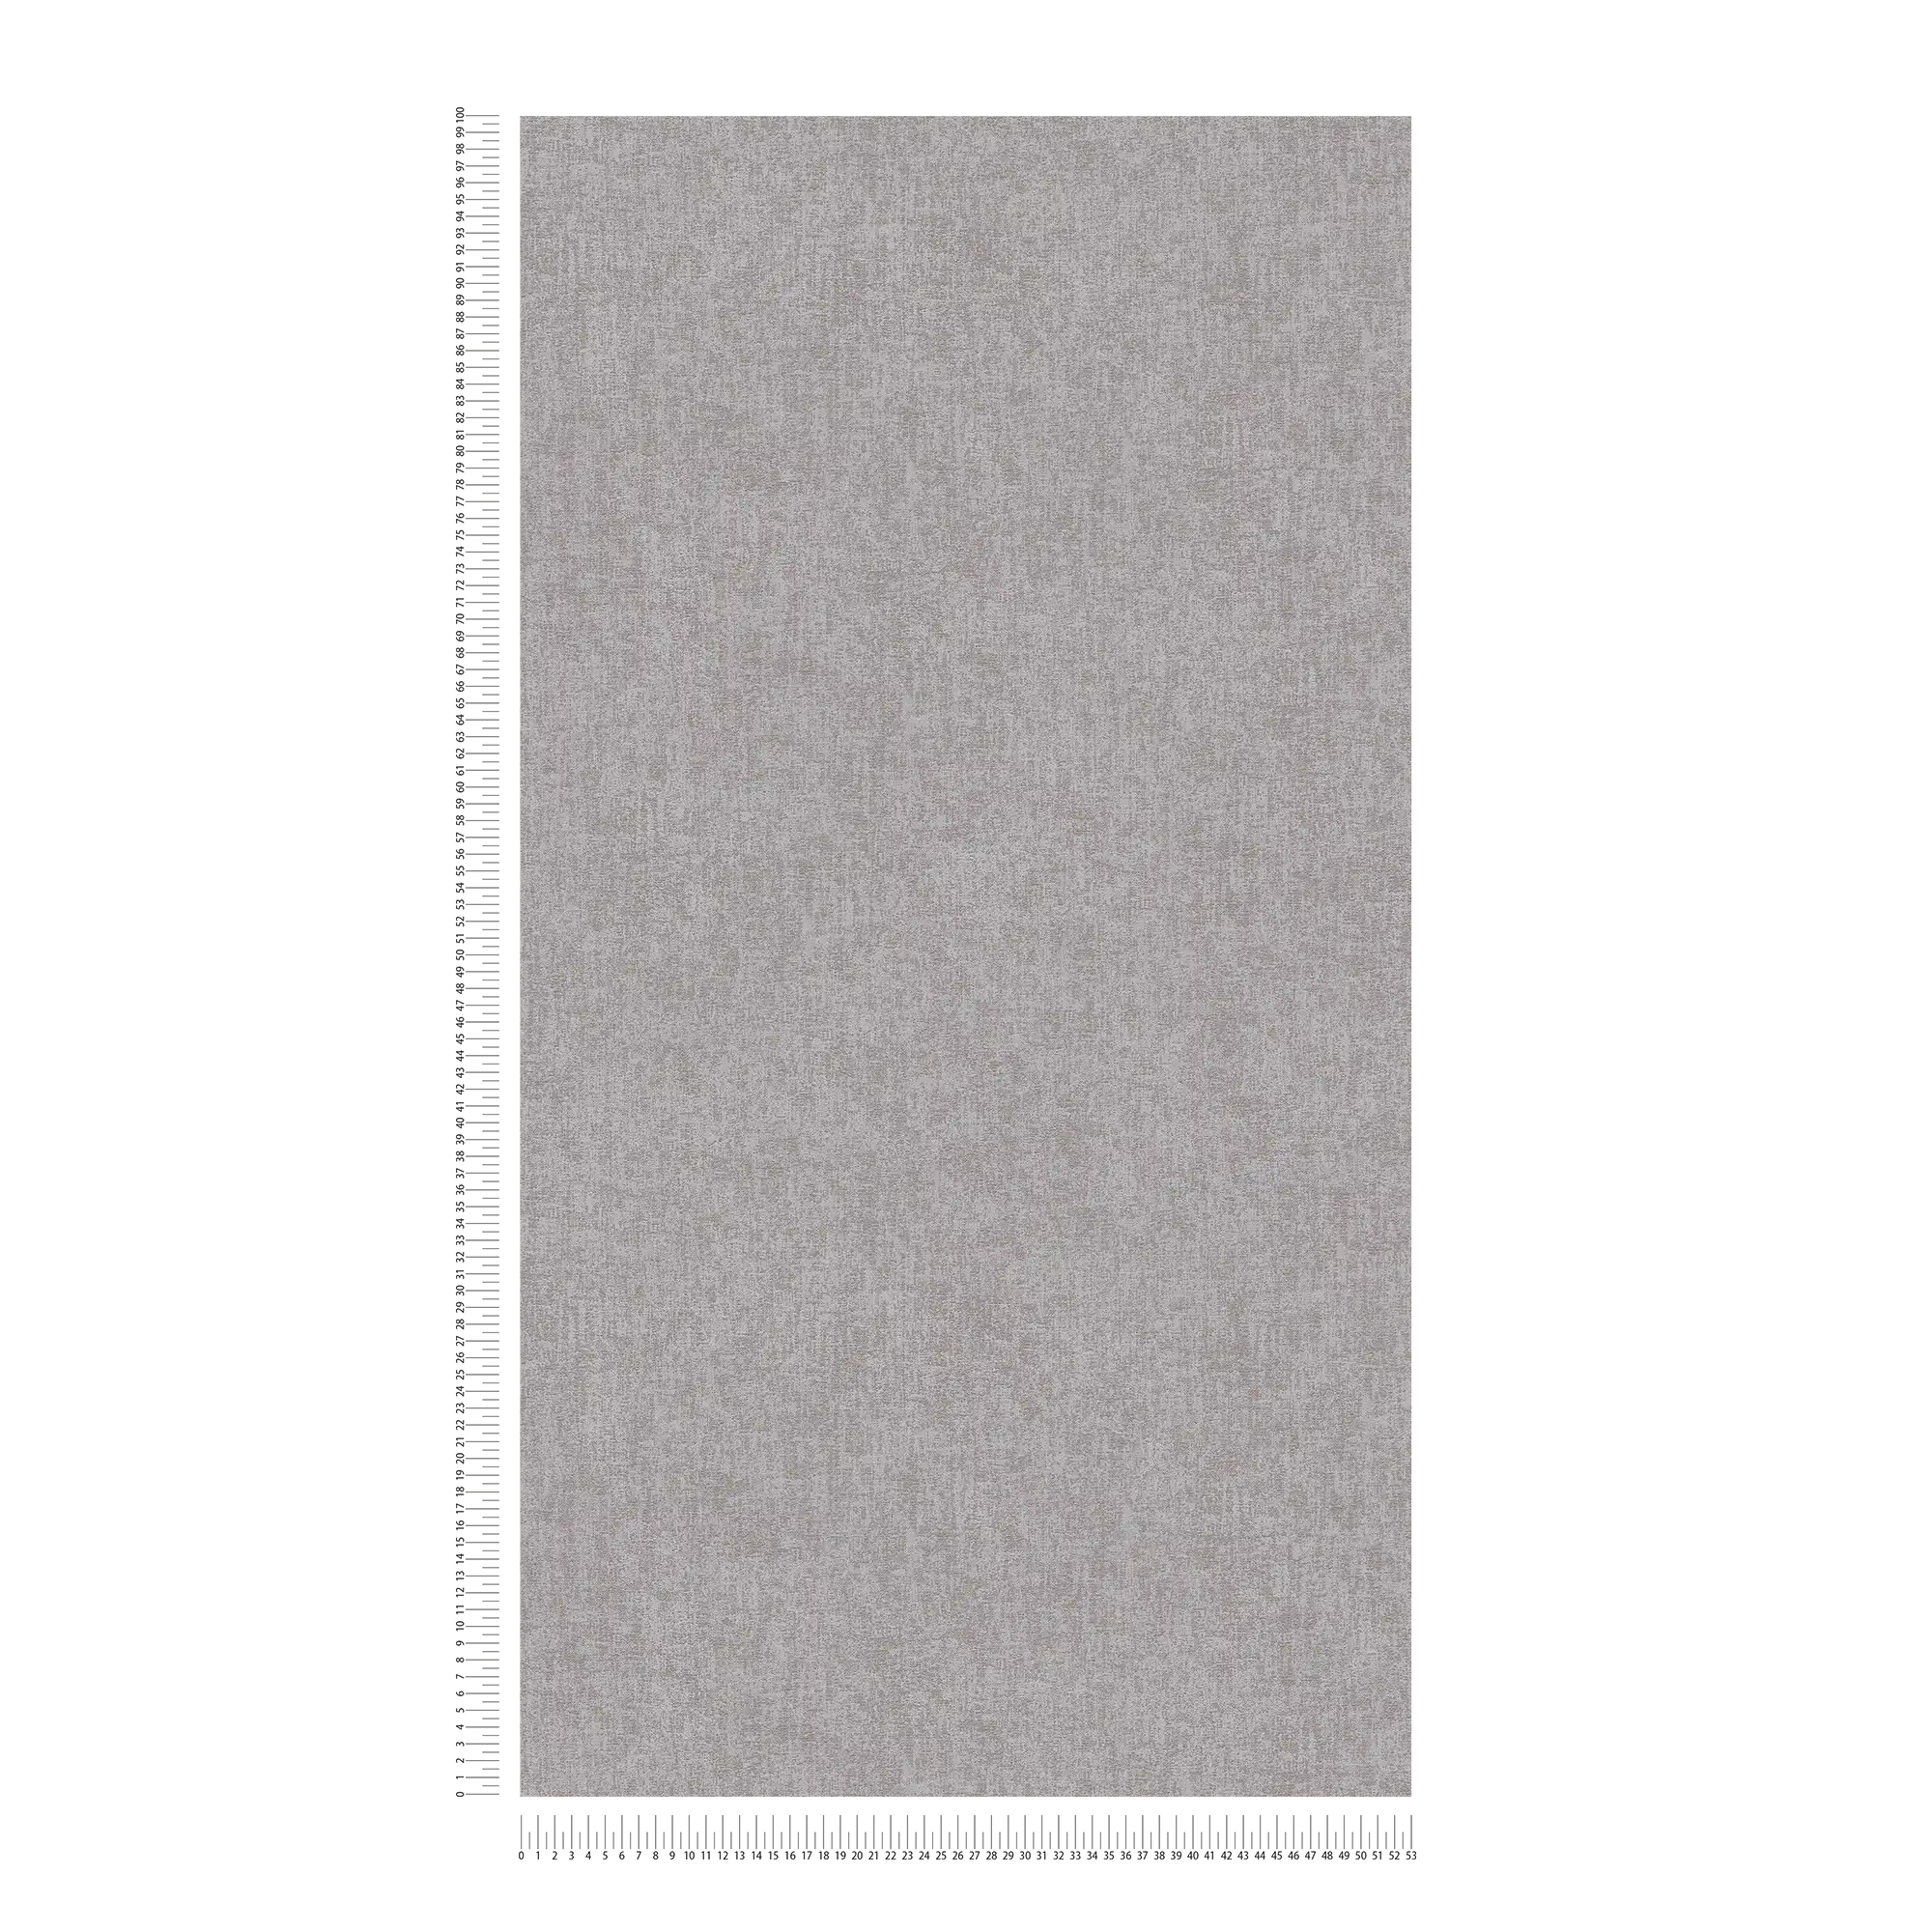             Papier peint uni chiné avec aspect textile - gris, marron
        